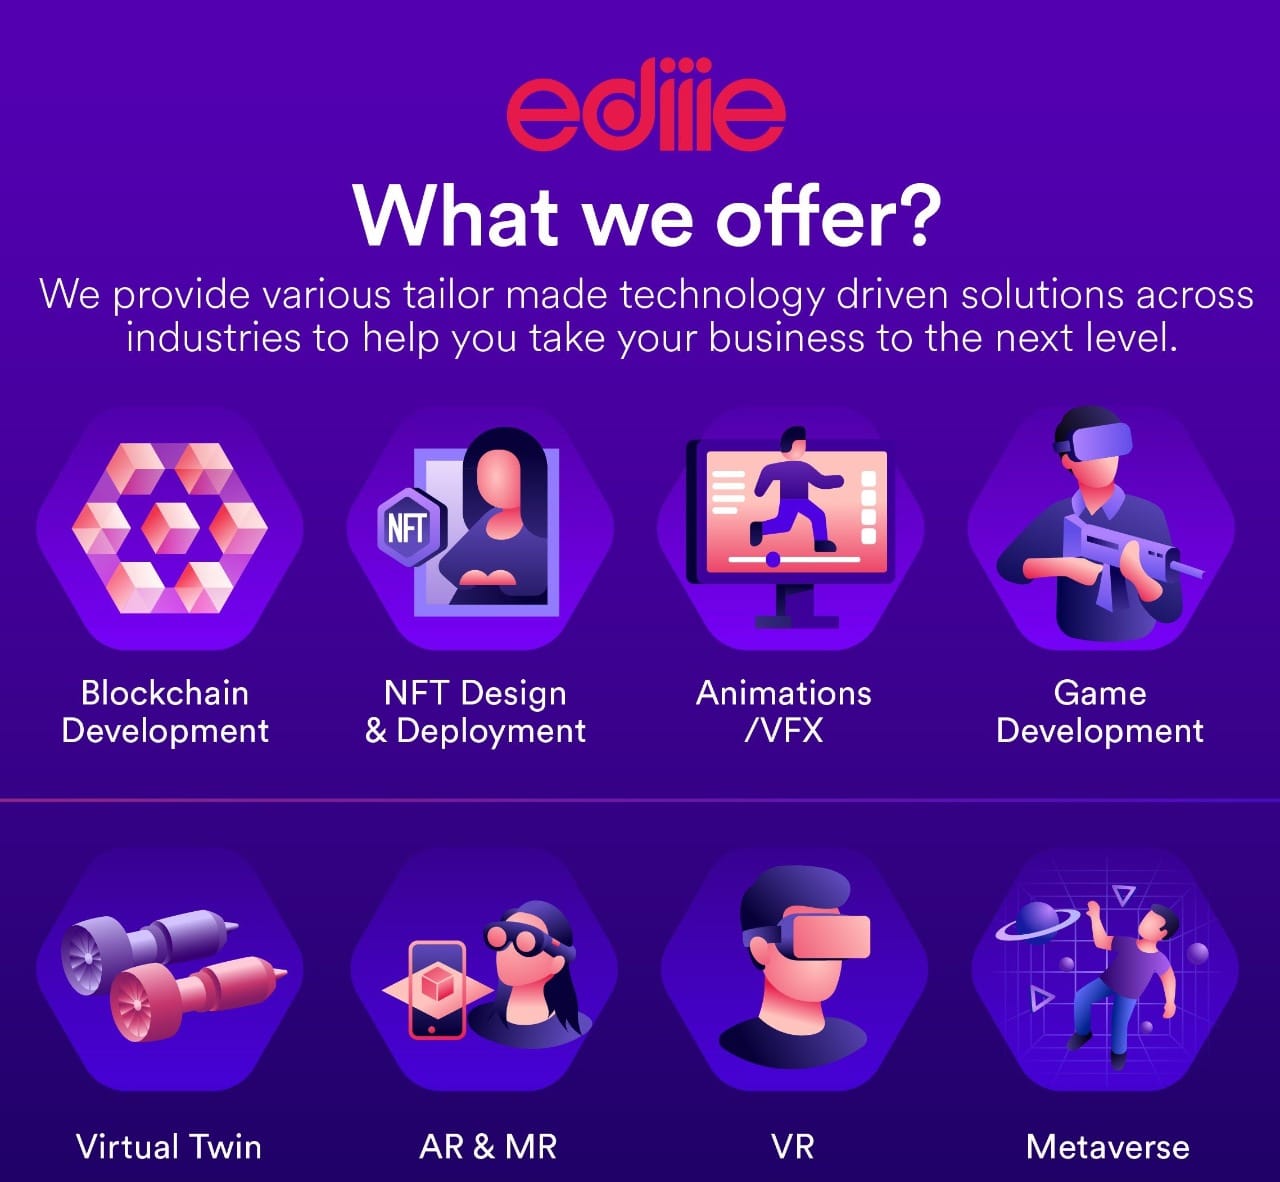 EDIIIE offer